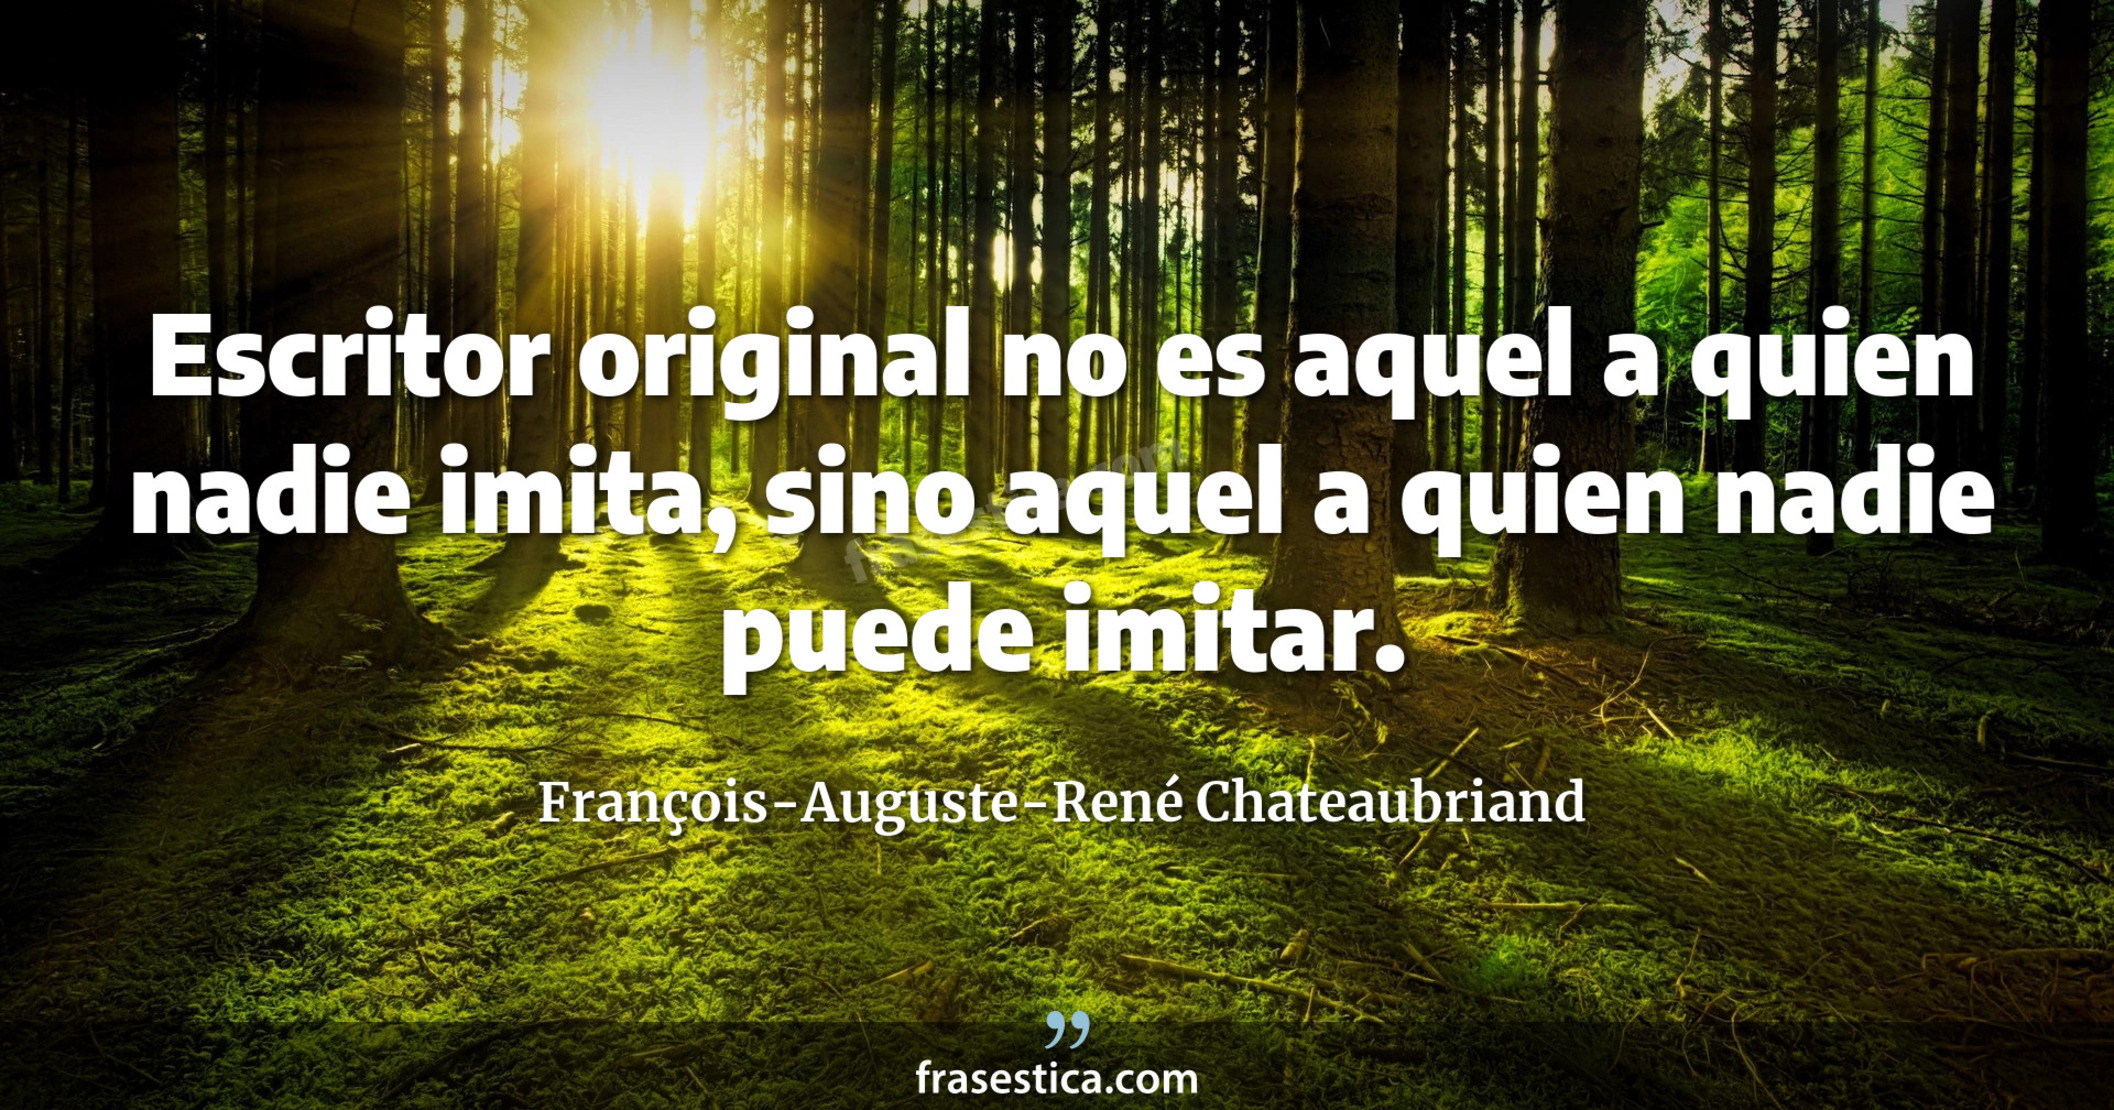 Escritor original no es aquel a quien nadie imita, sino aquel a quien nadie puede imitar. - François-Auguste-René Chateaubriand